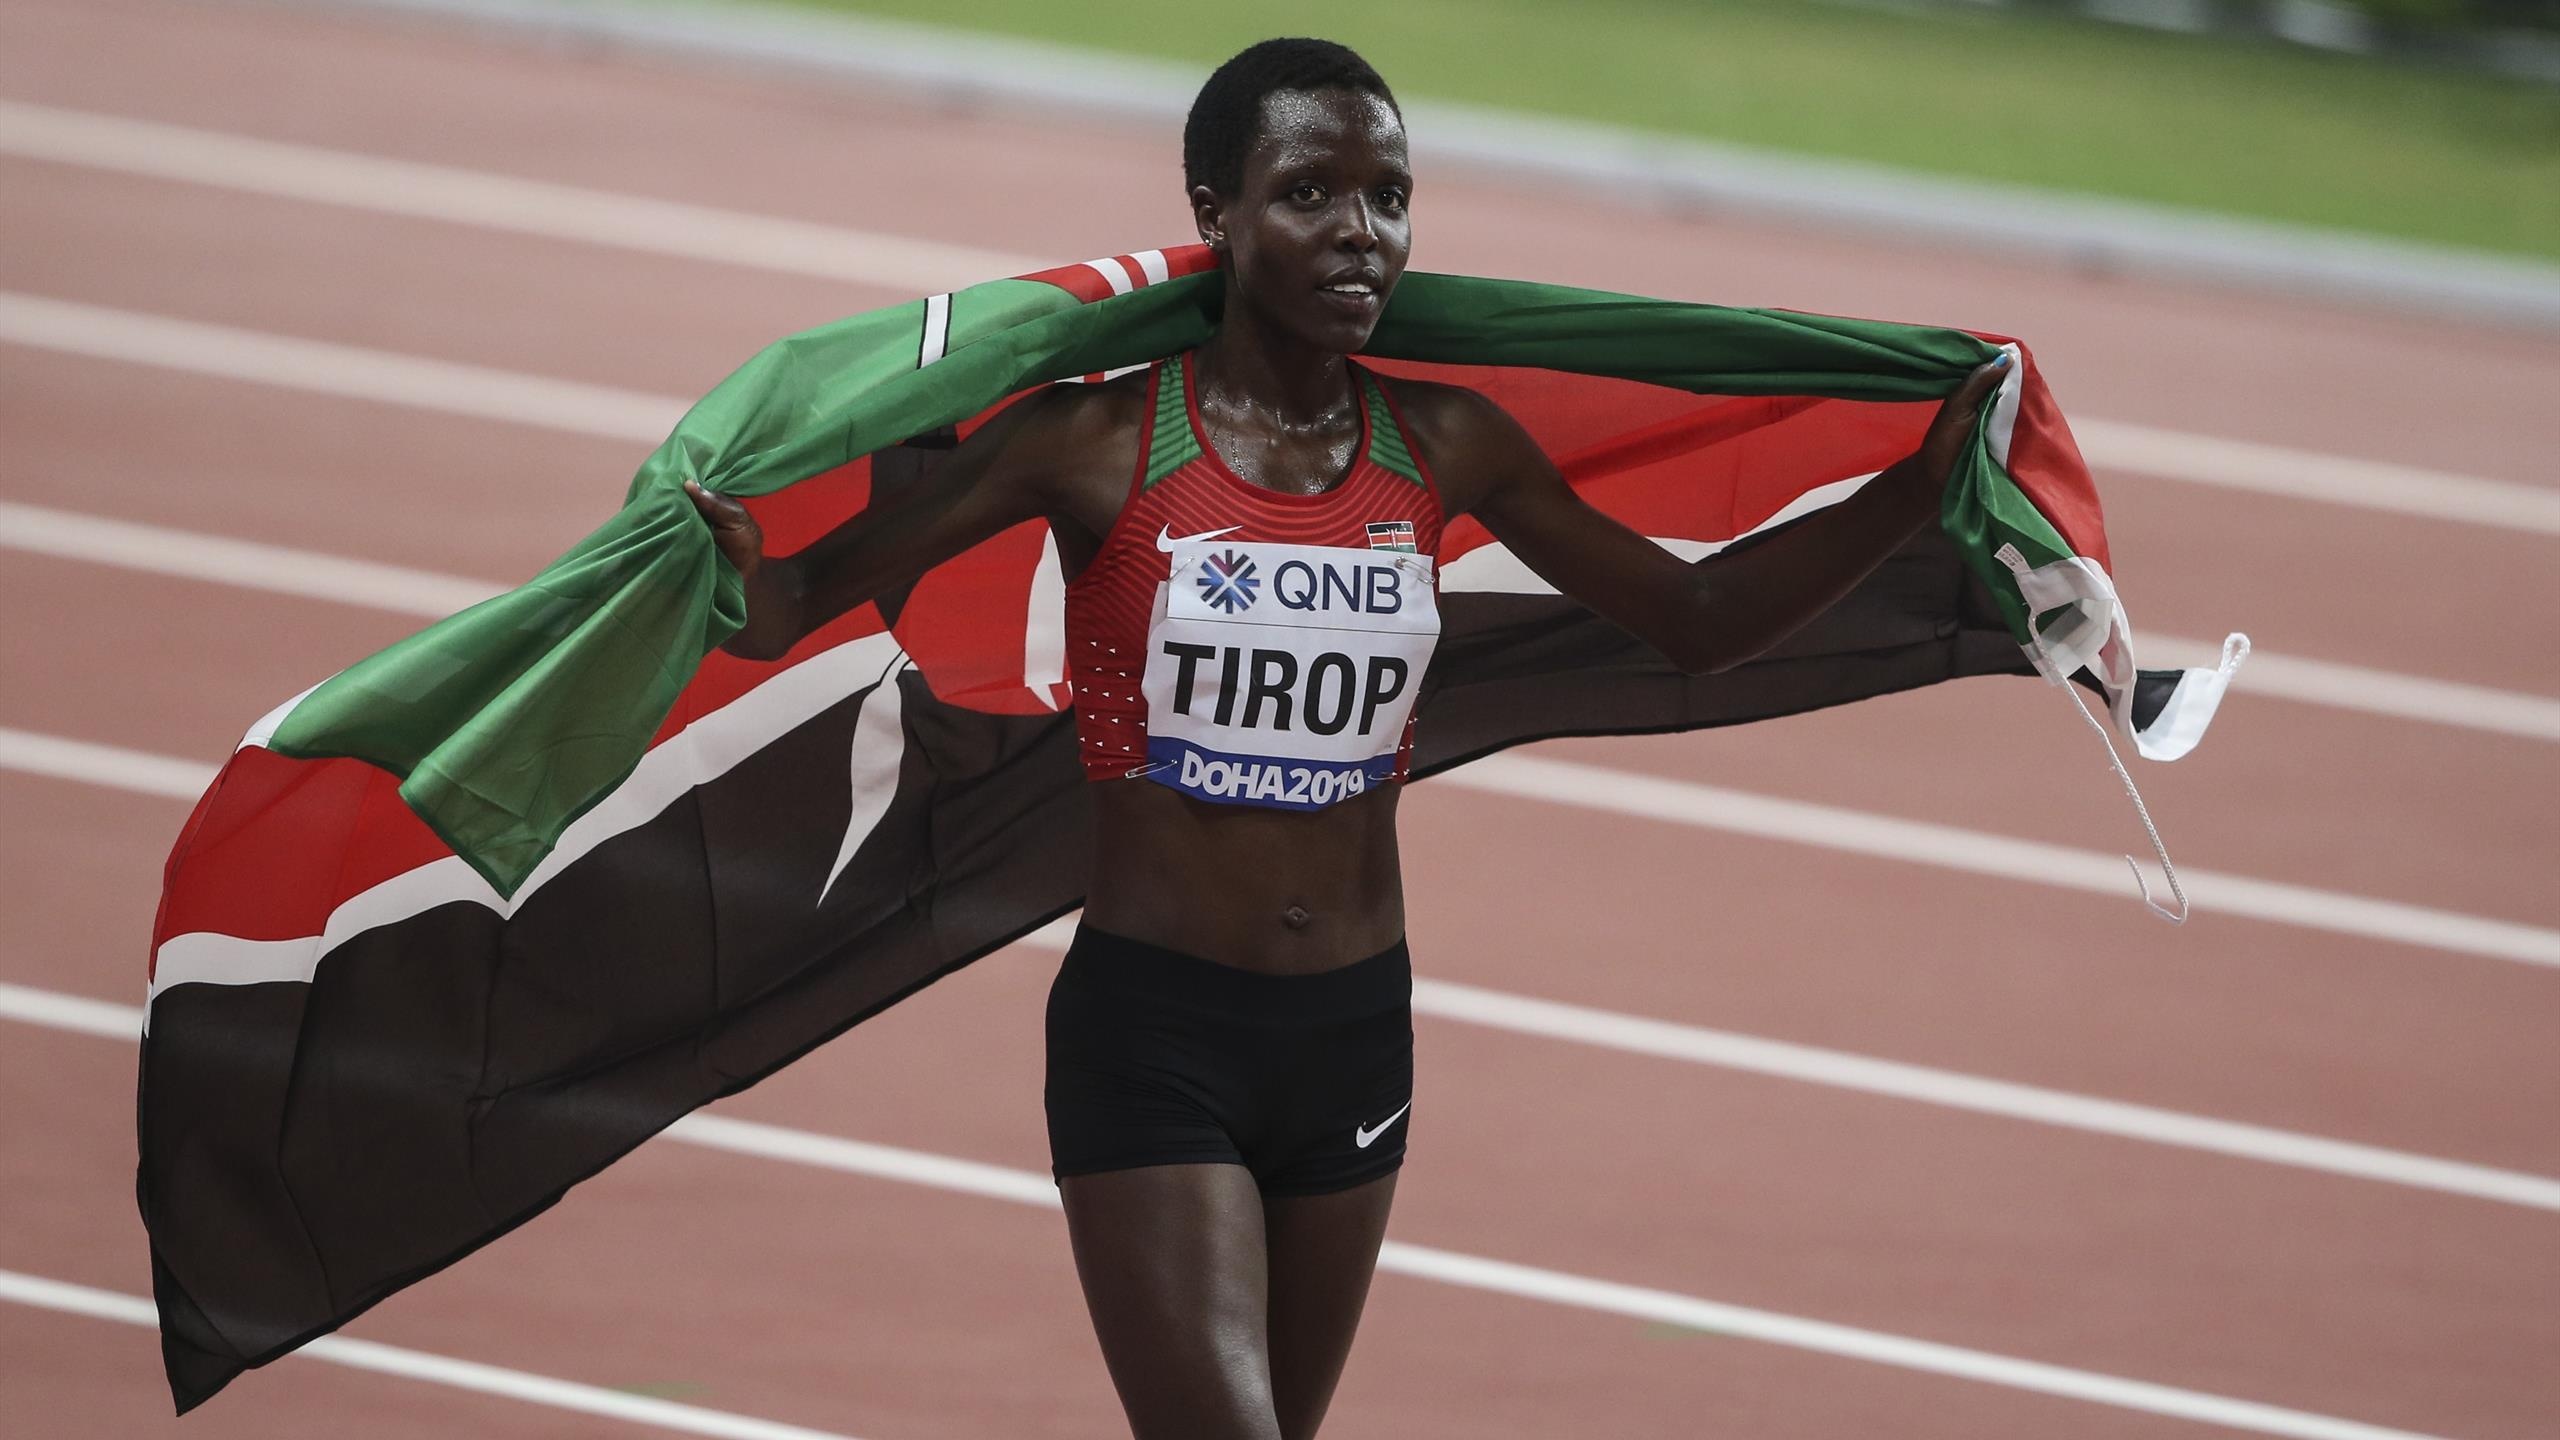 Agnes Tirop, Criminal investigation, Police open case, Kenyan world record holder, 2560x1440 HD Desktop